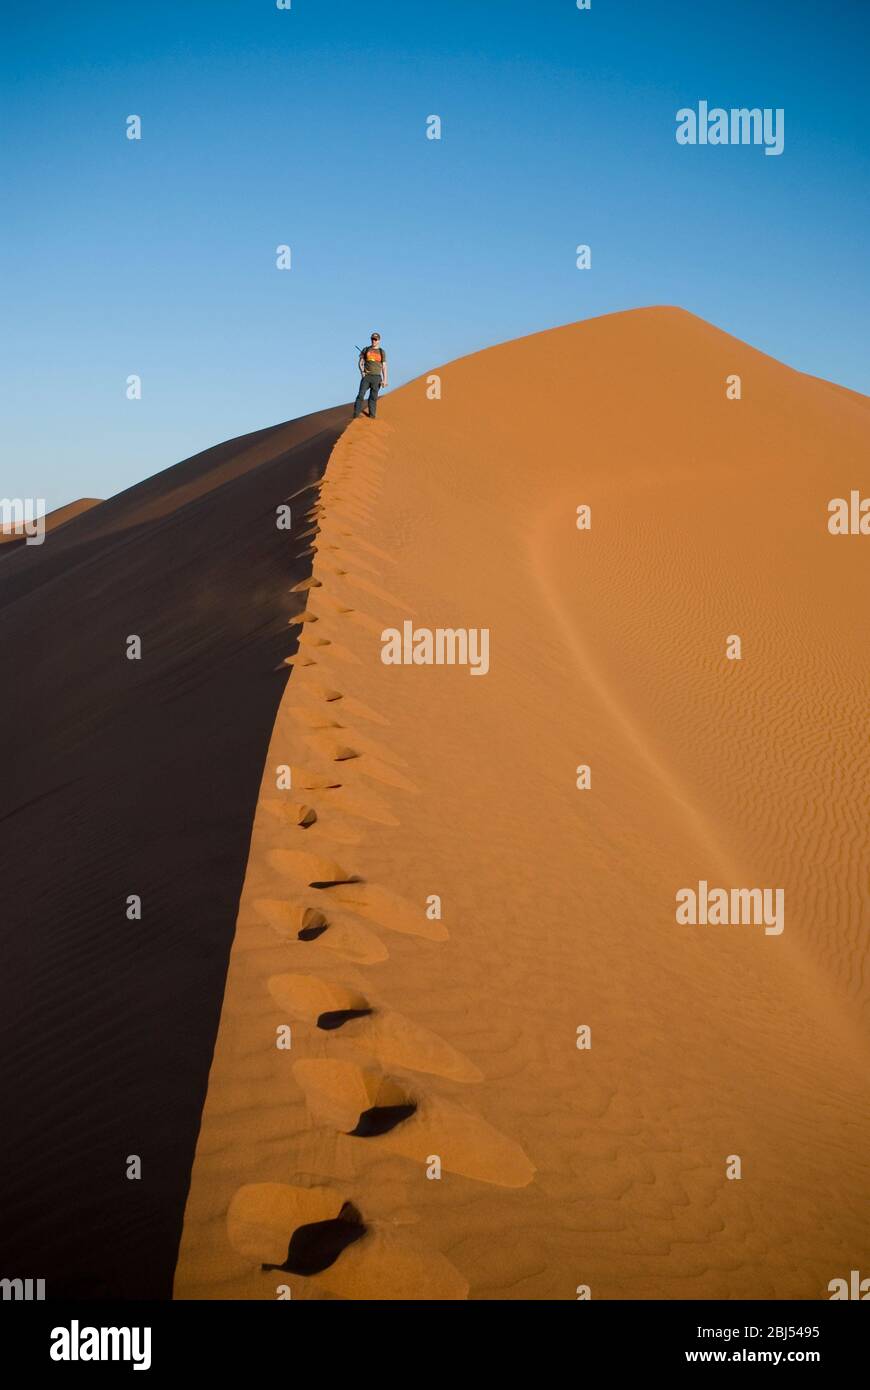 Ein einziger Mann klettert bei Sonnenuntergang in der Namid Wüste in Sossusvlei, Namibia, Afrika auf einer Sanddüne. Hochformat. Stockfoto